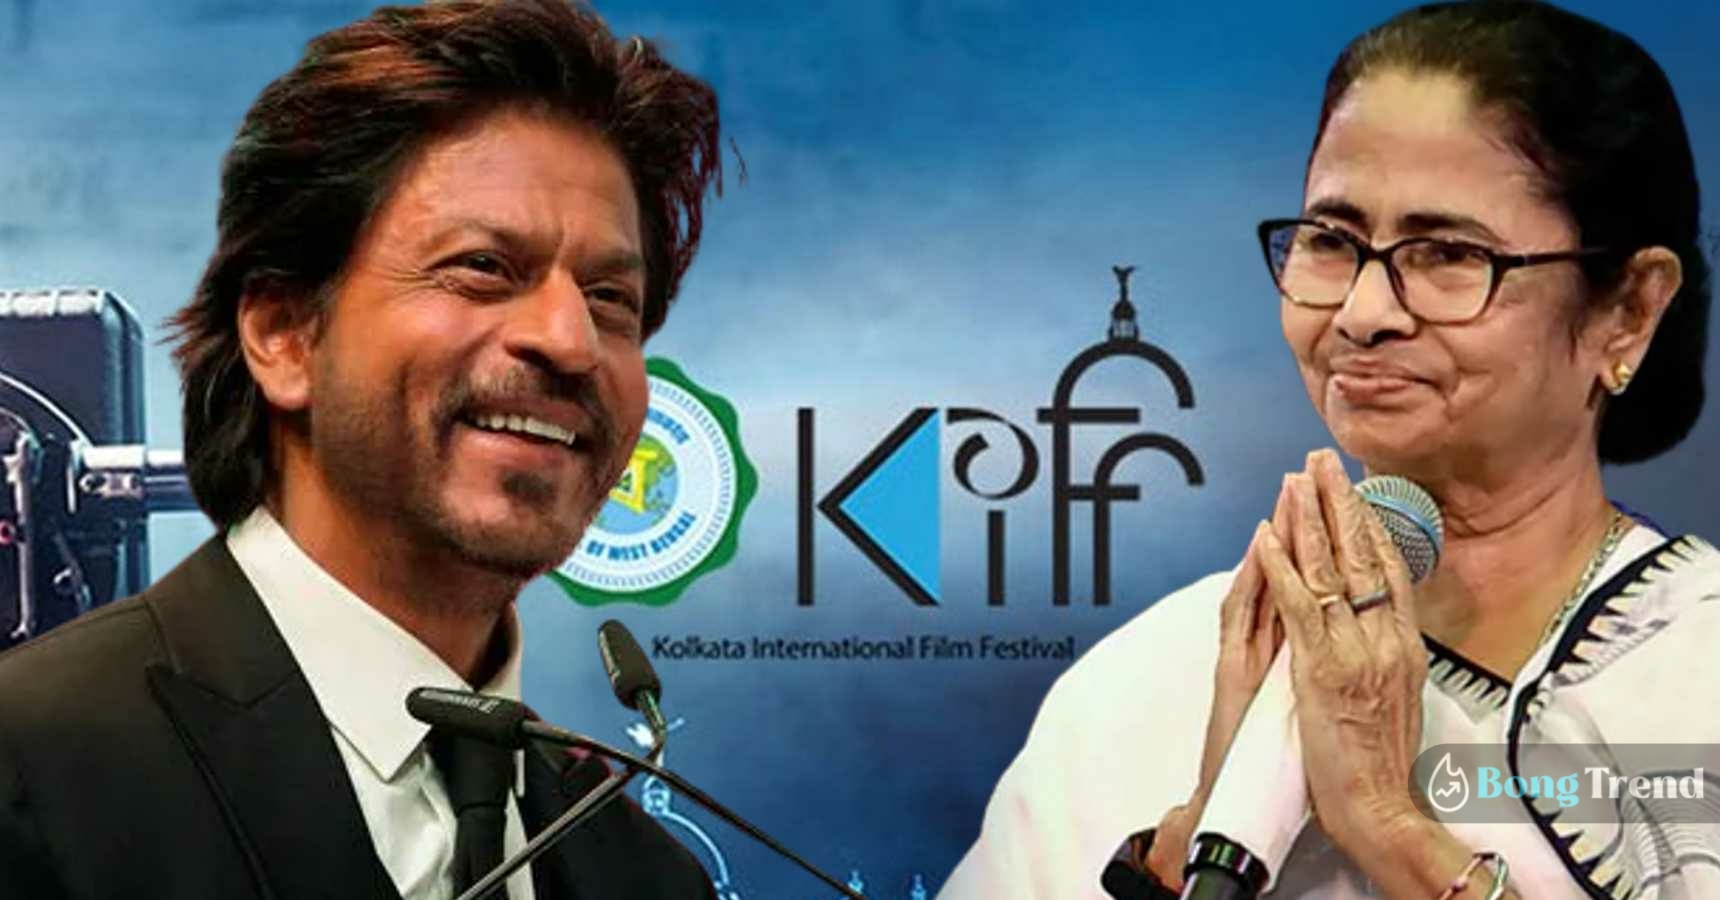 Bollywood badshah Shahrukh Khan at 28th Kollkata film festival